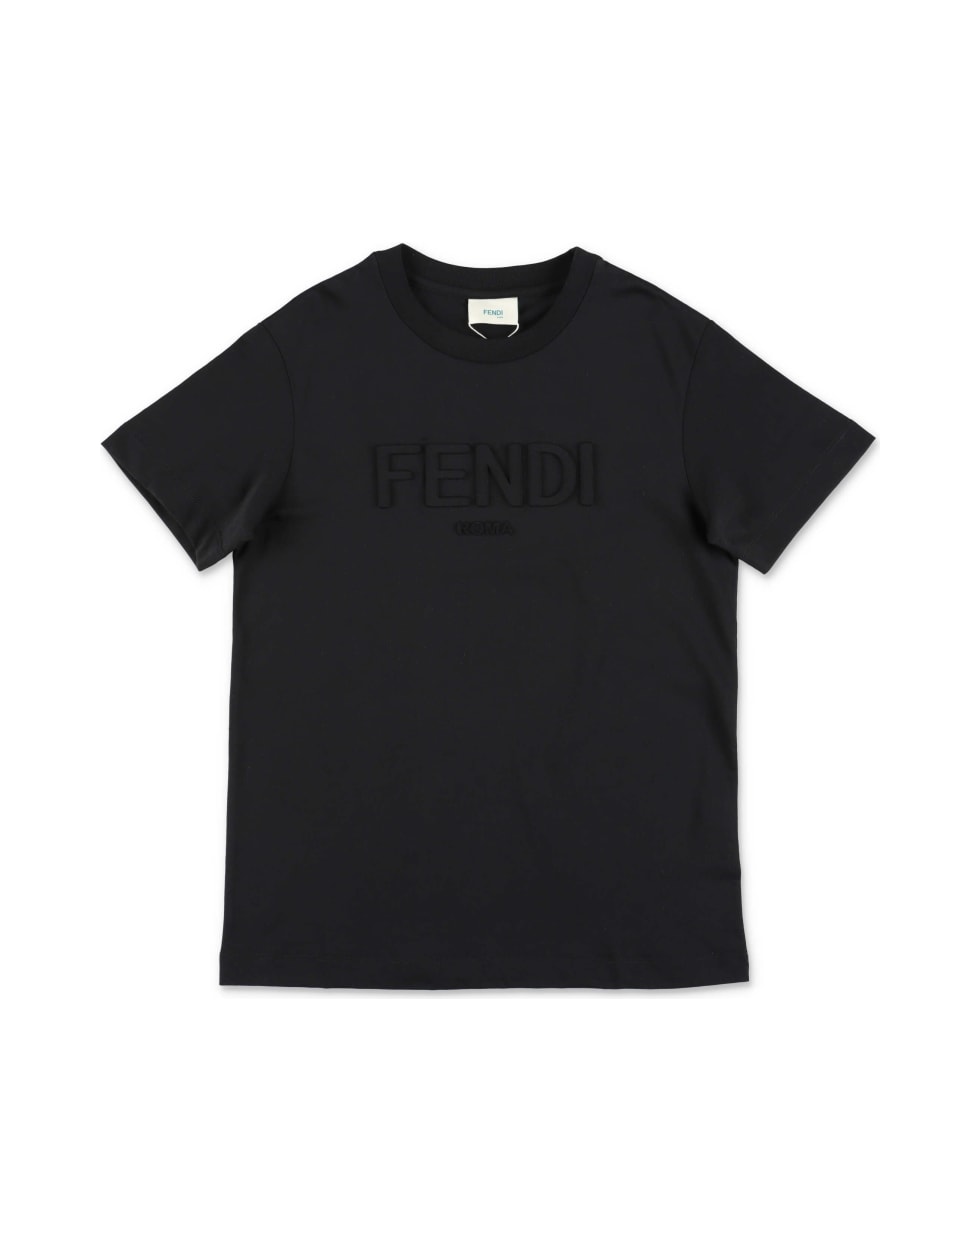 Fendi T-shirt Nera In Jersey Di Cotone - Nero